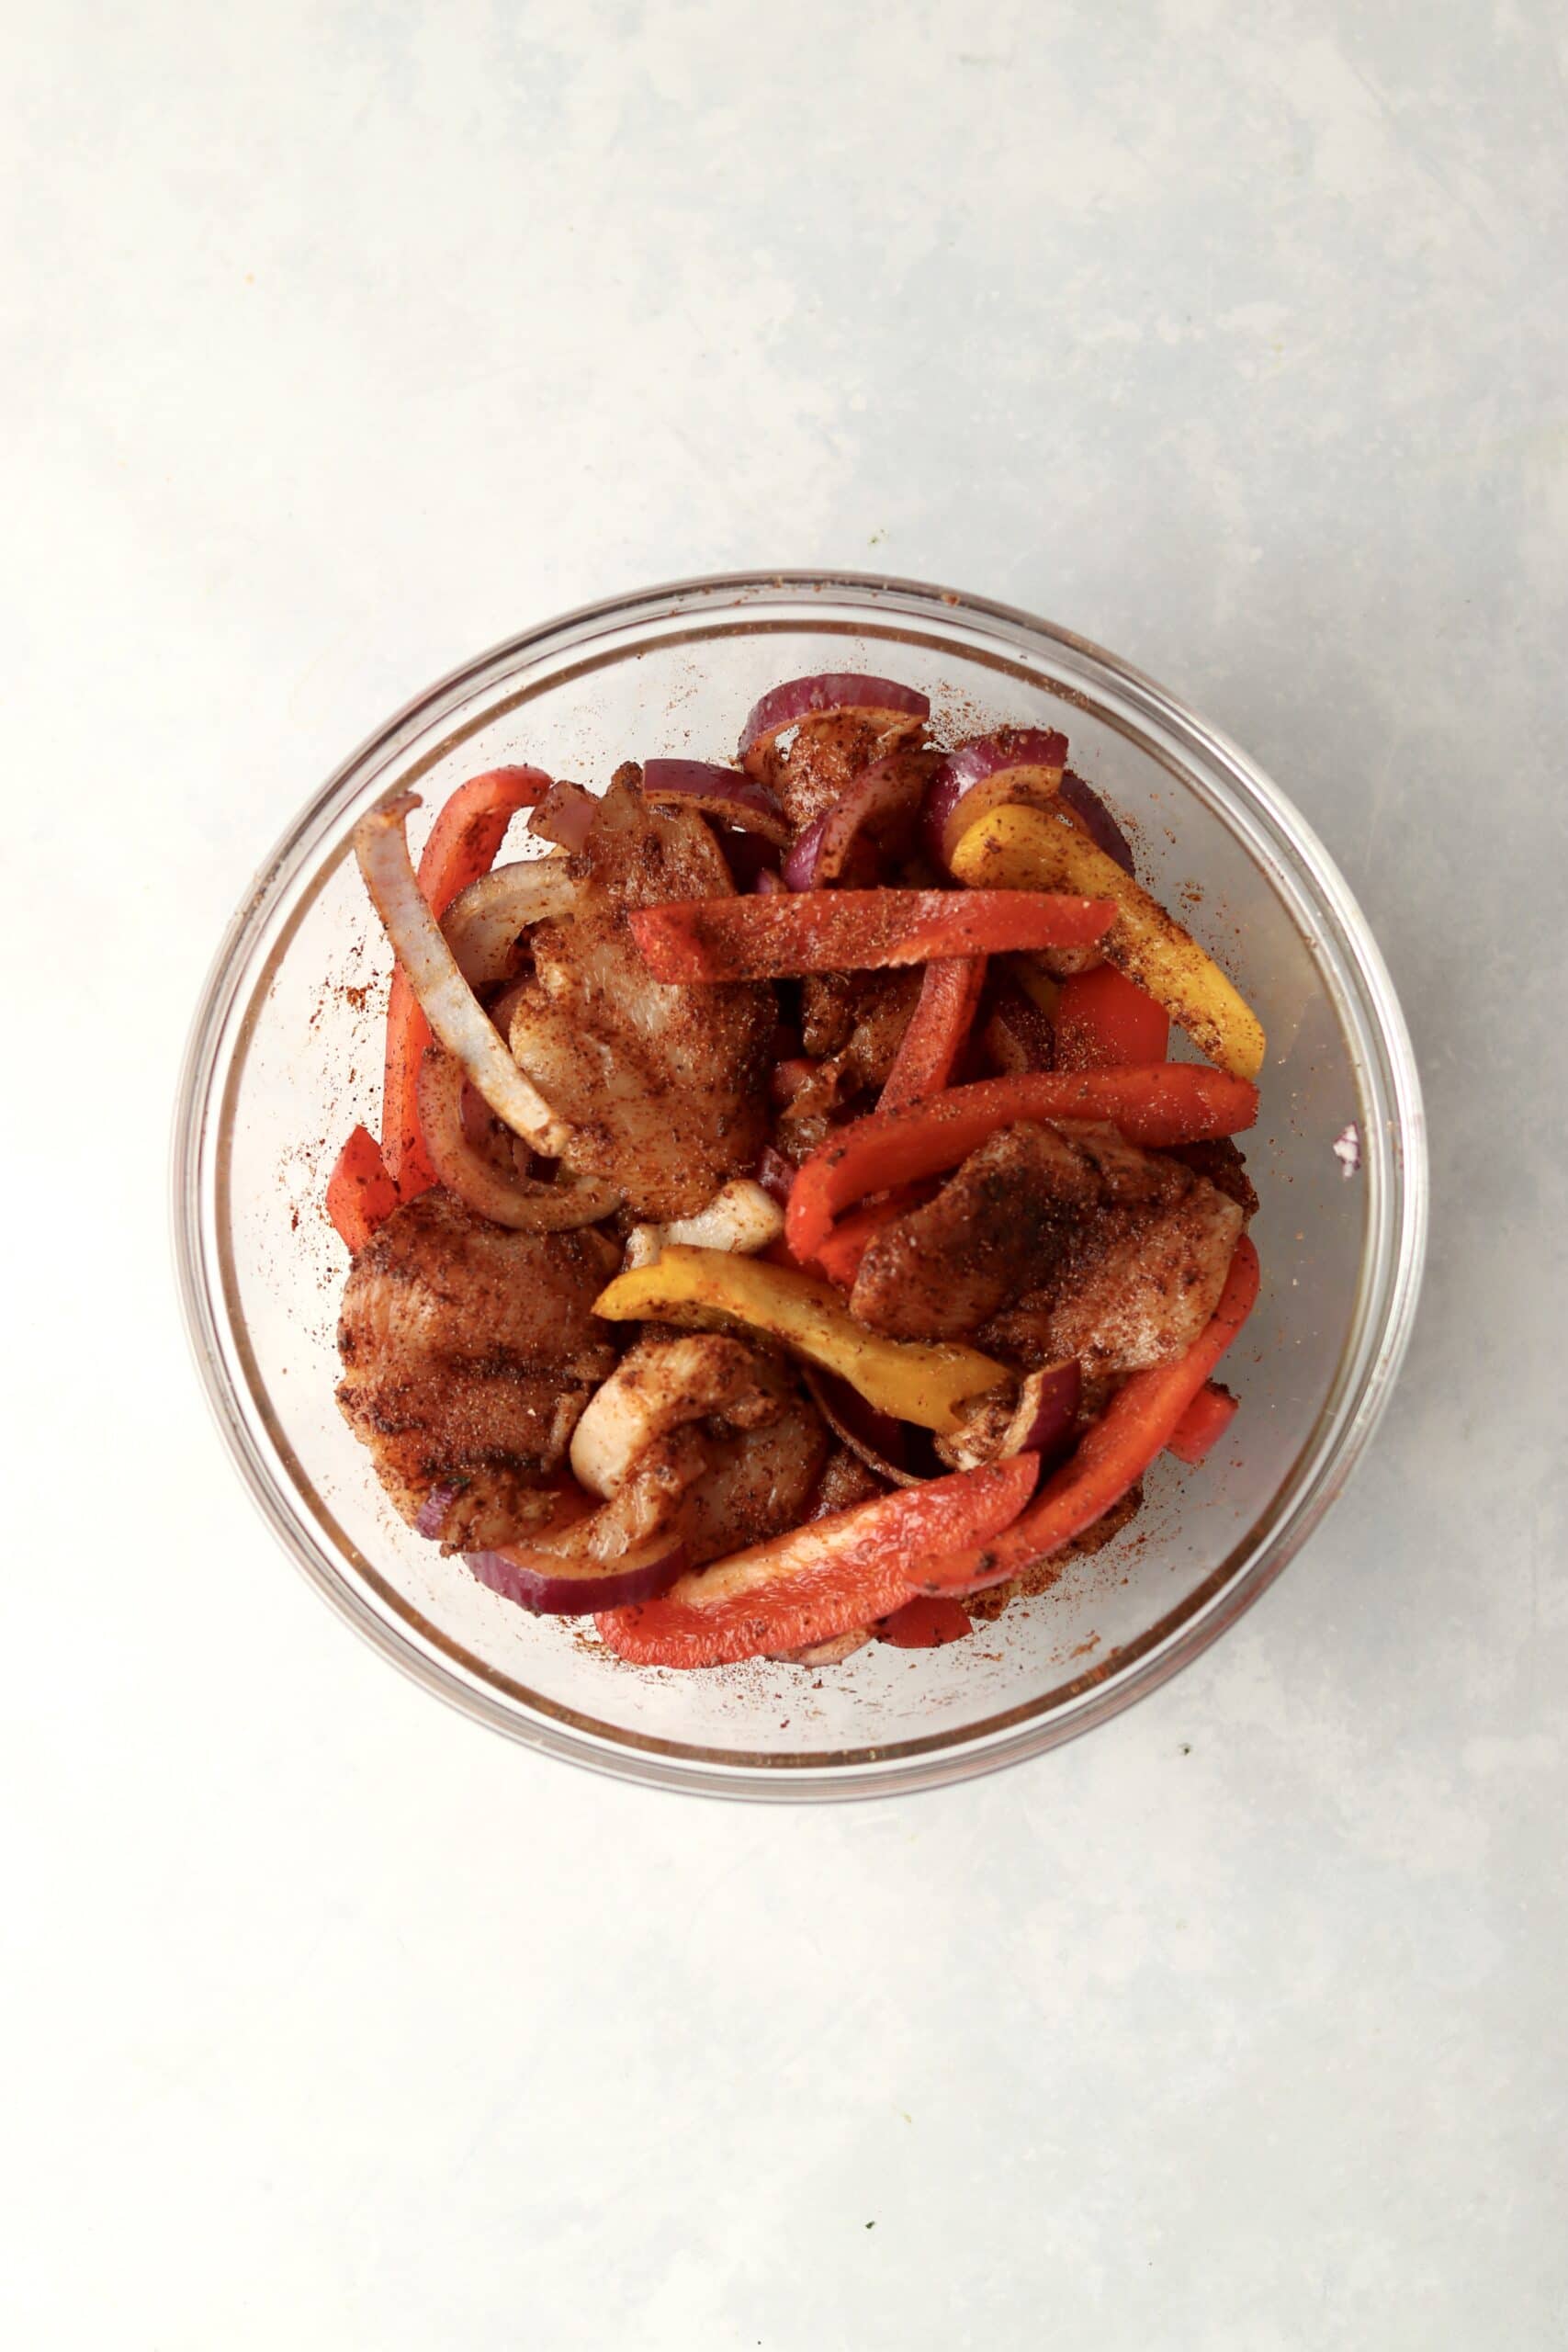 chicken and veggies in fajita seasonings.